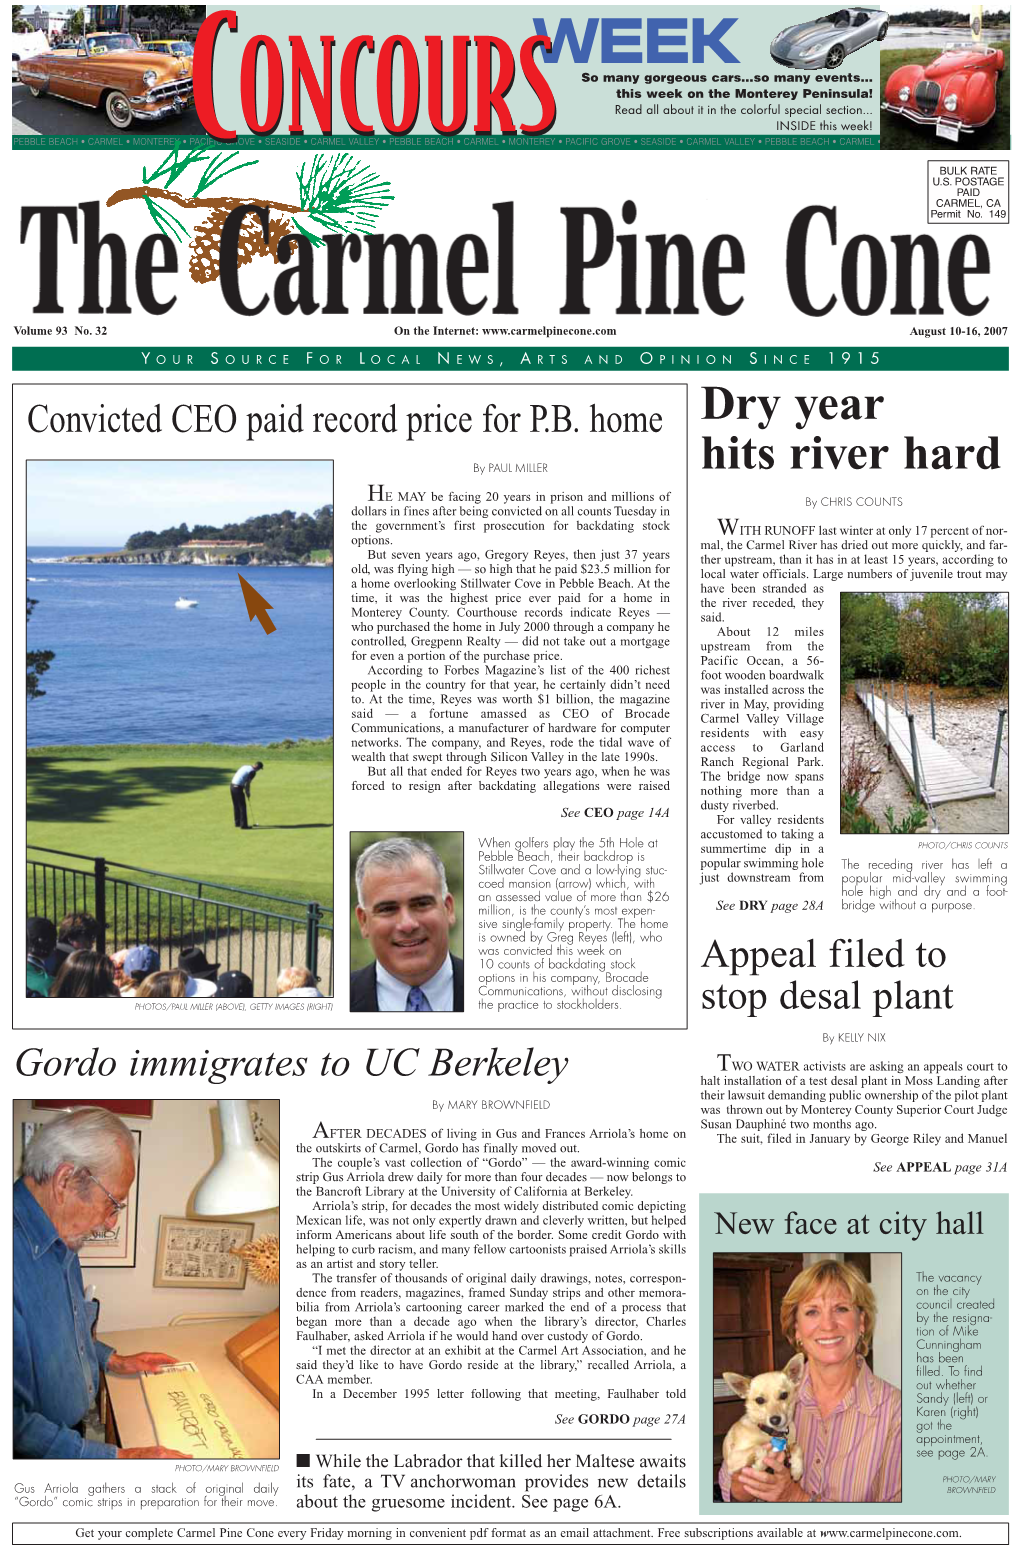 Carmel Pine Cone, August 10, 2007 (Main News Web)